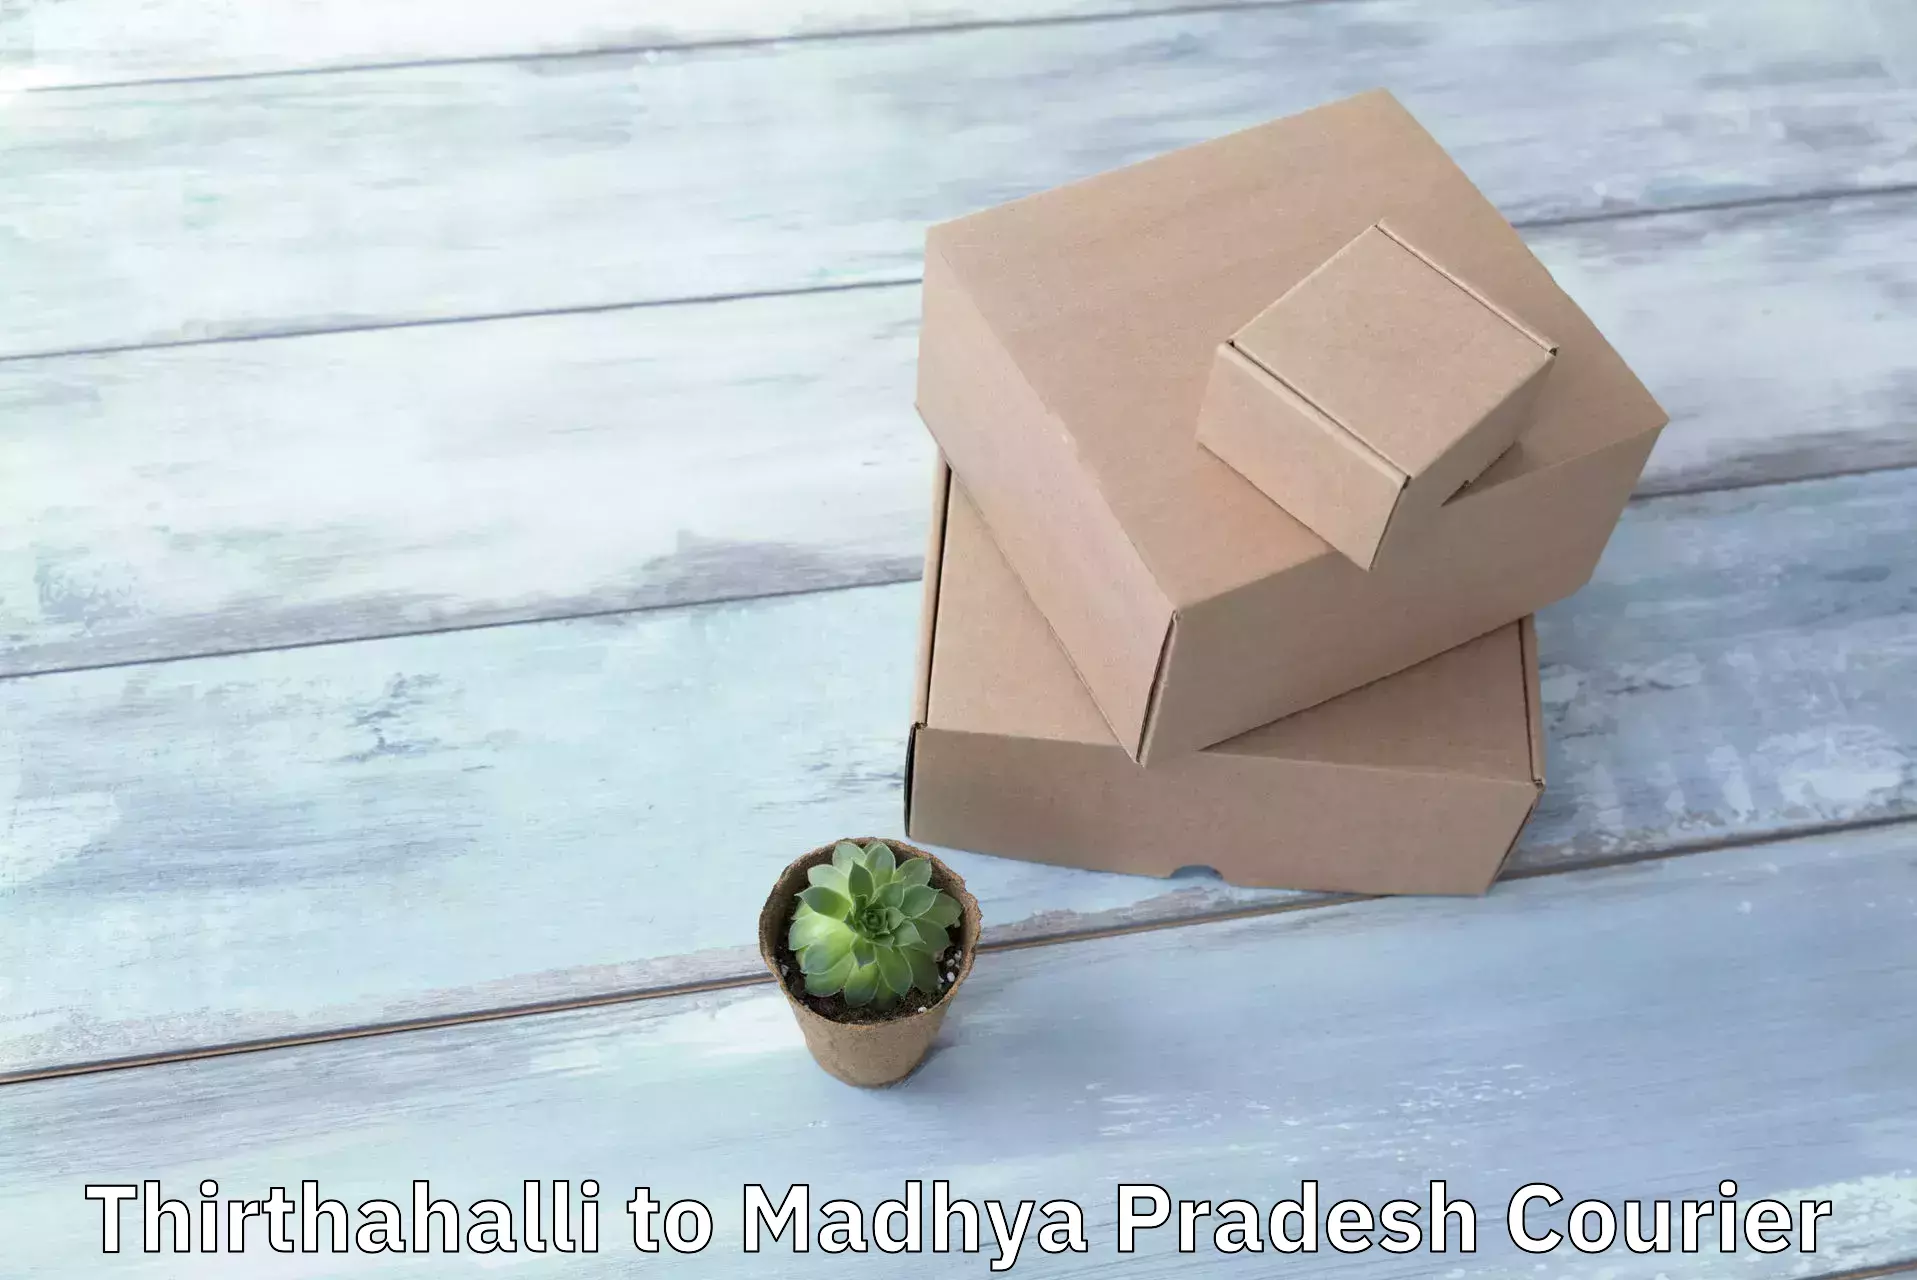 Custom courier packaging Thirthahalli to Shahpura Dindori